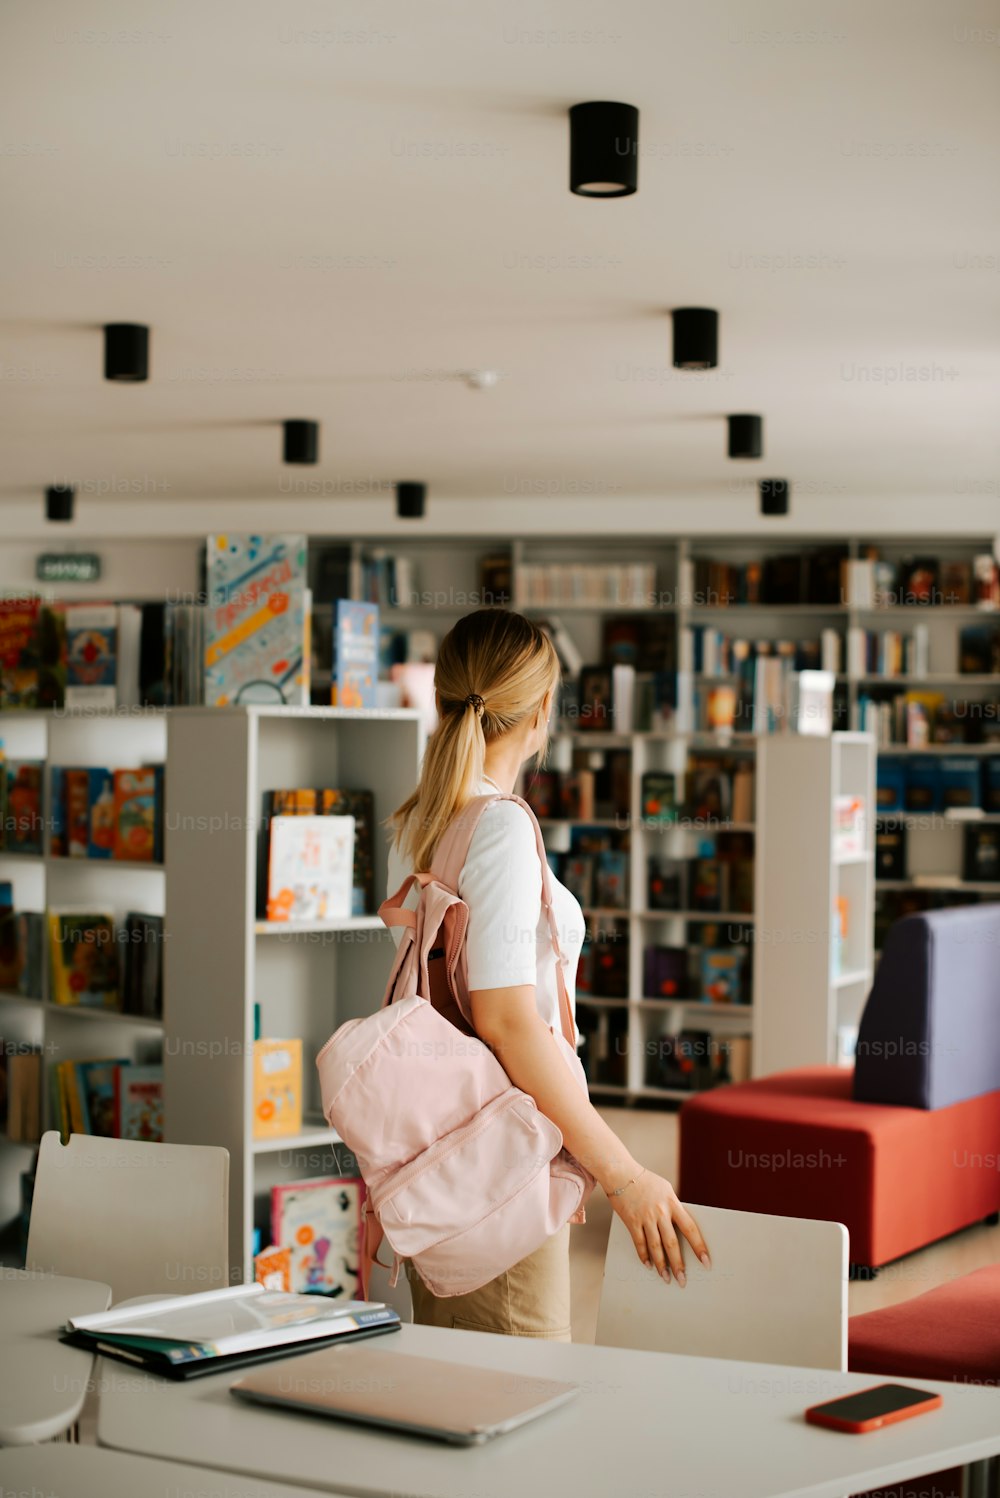 분홍색 배낭을 메고 도서관에 서 있는 여자